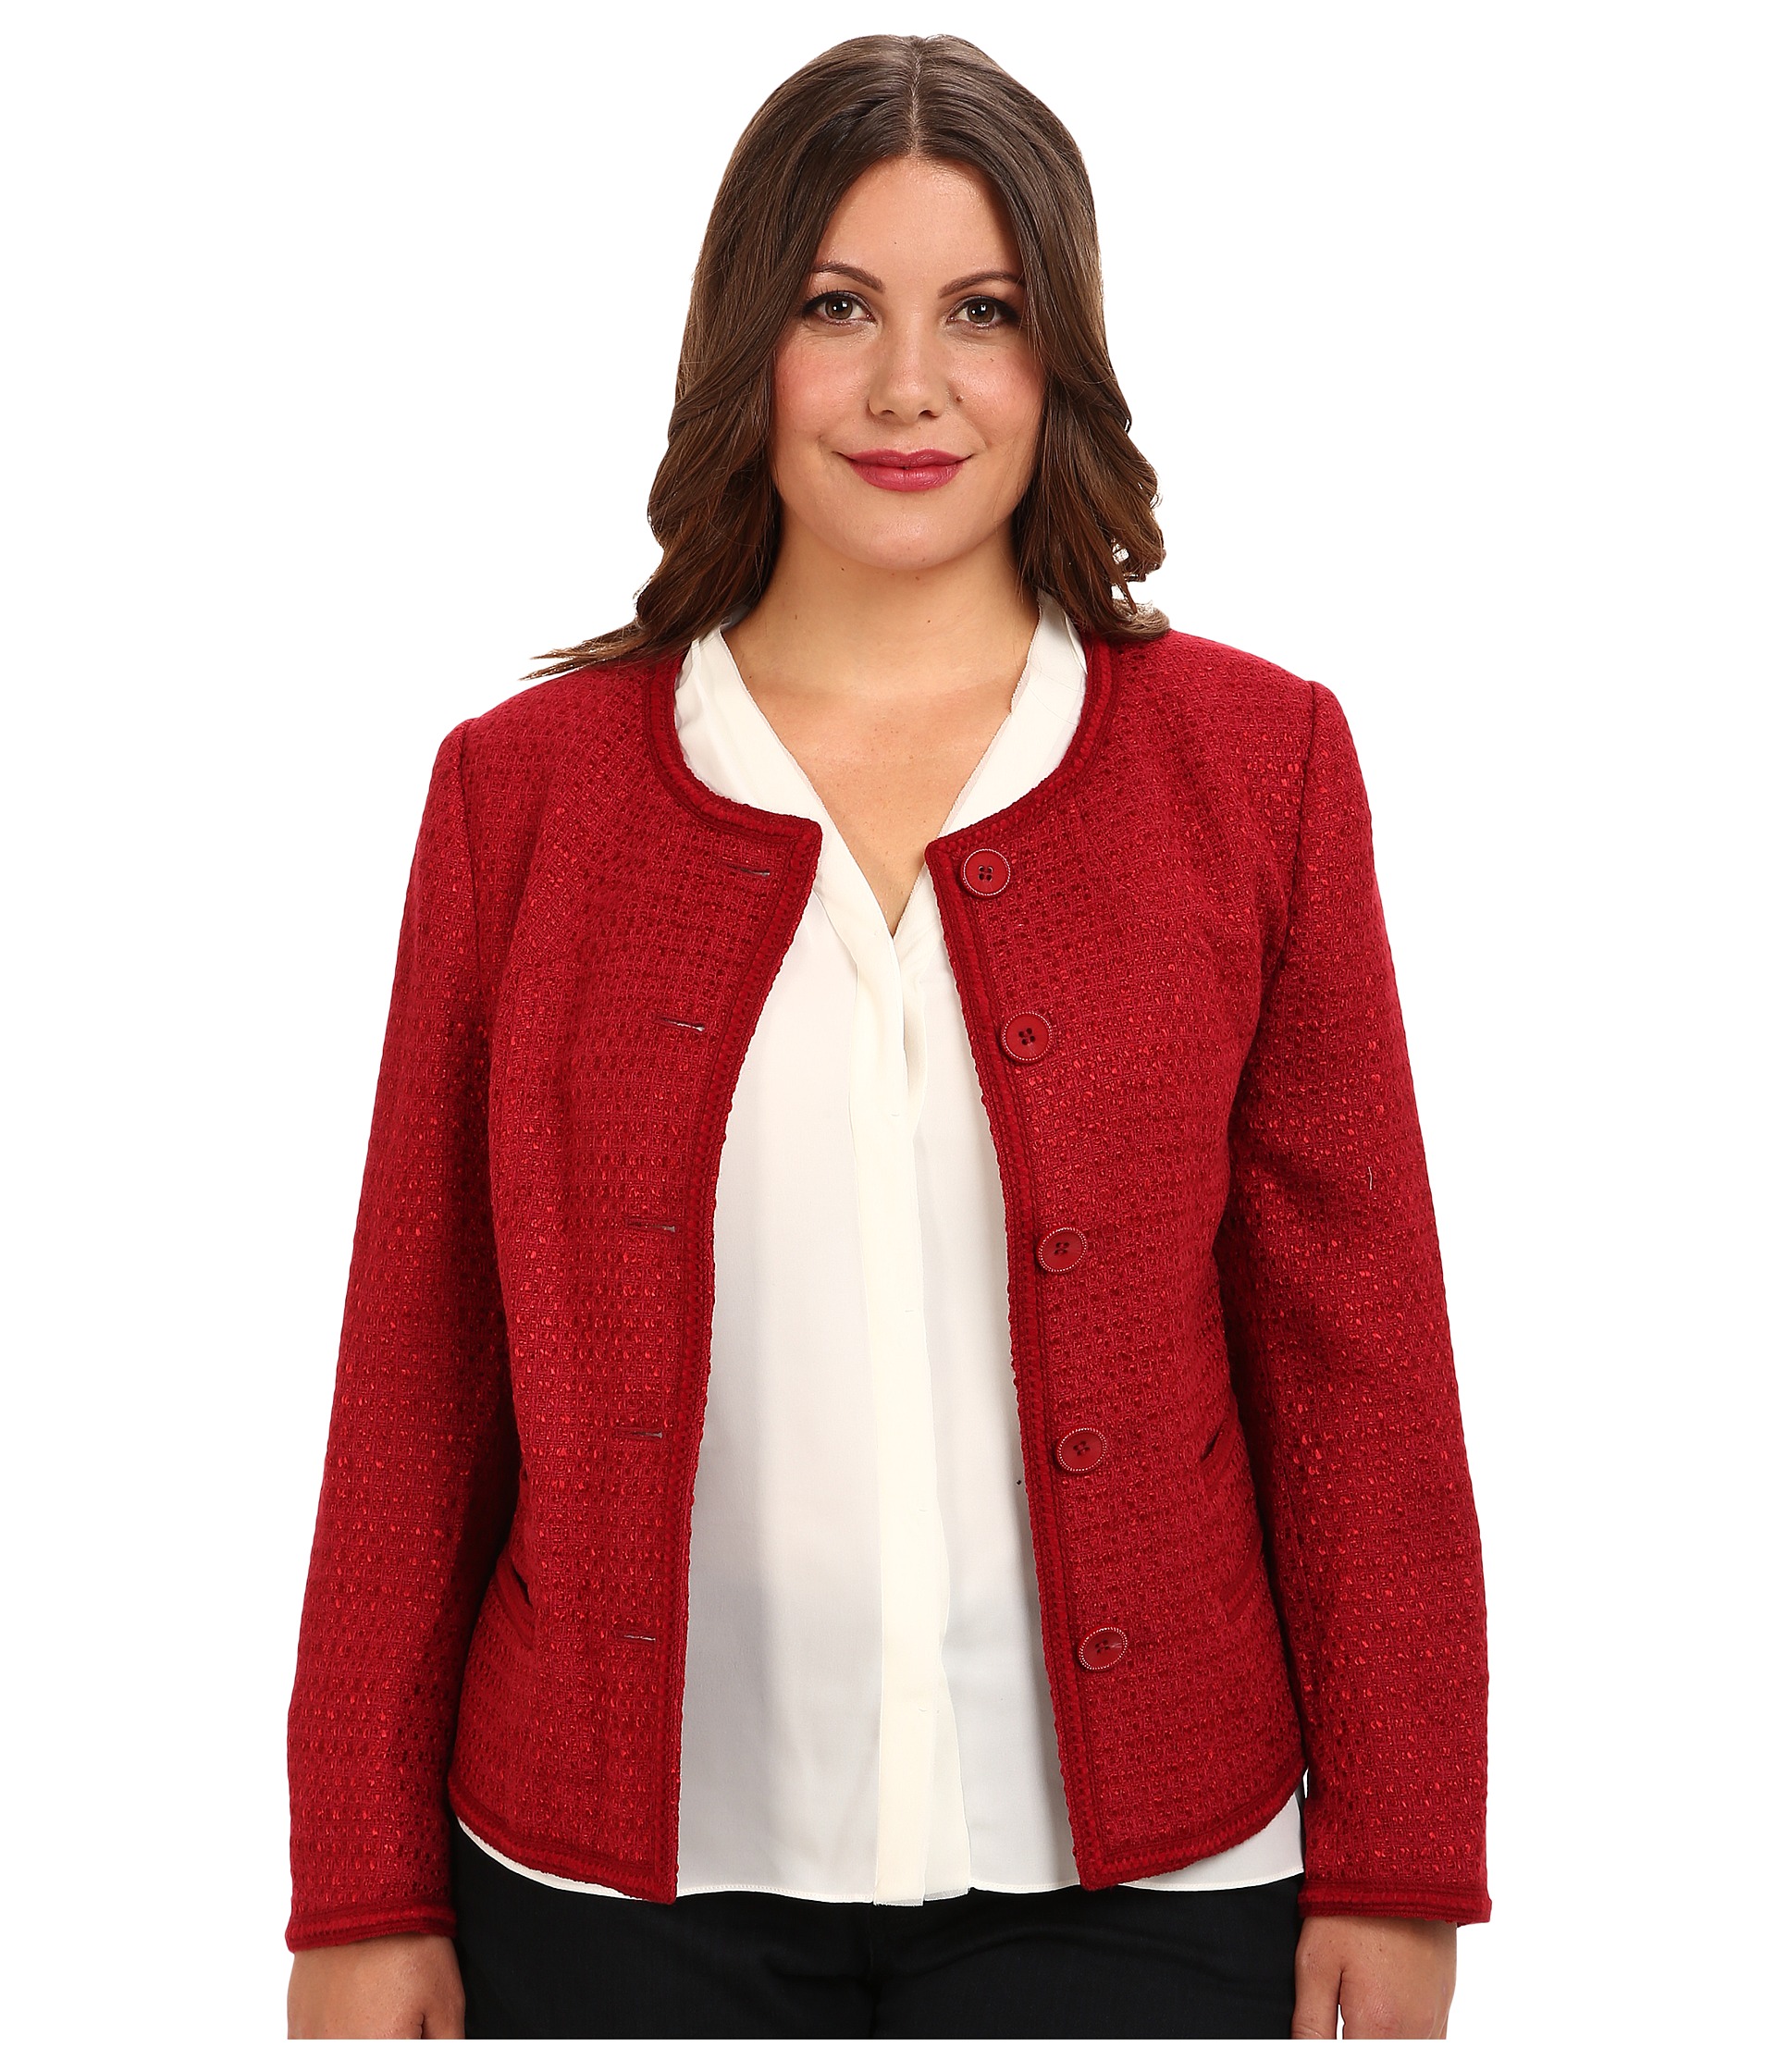 pendleton plus size cleo jacket red rock novelty weave